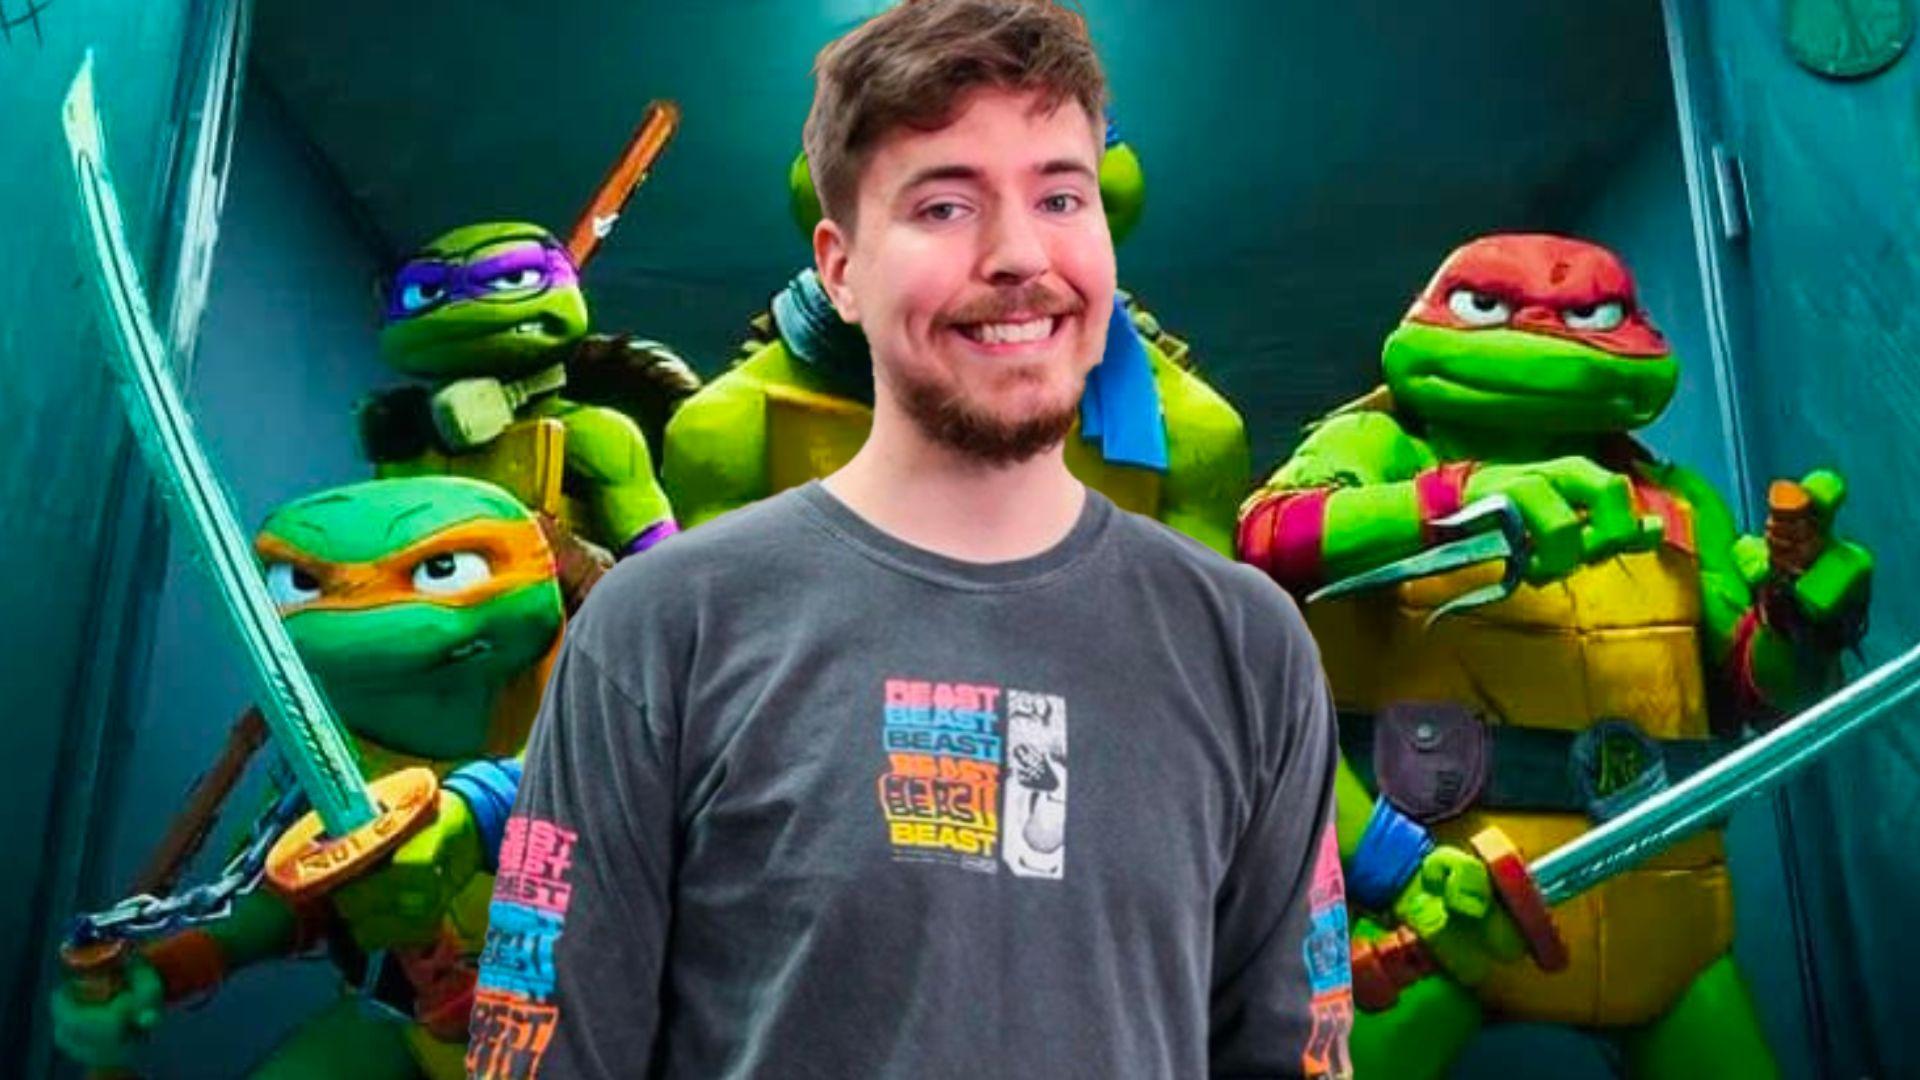 MrBeast stood in front of animated Teenage Mutant Ninja Turtles